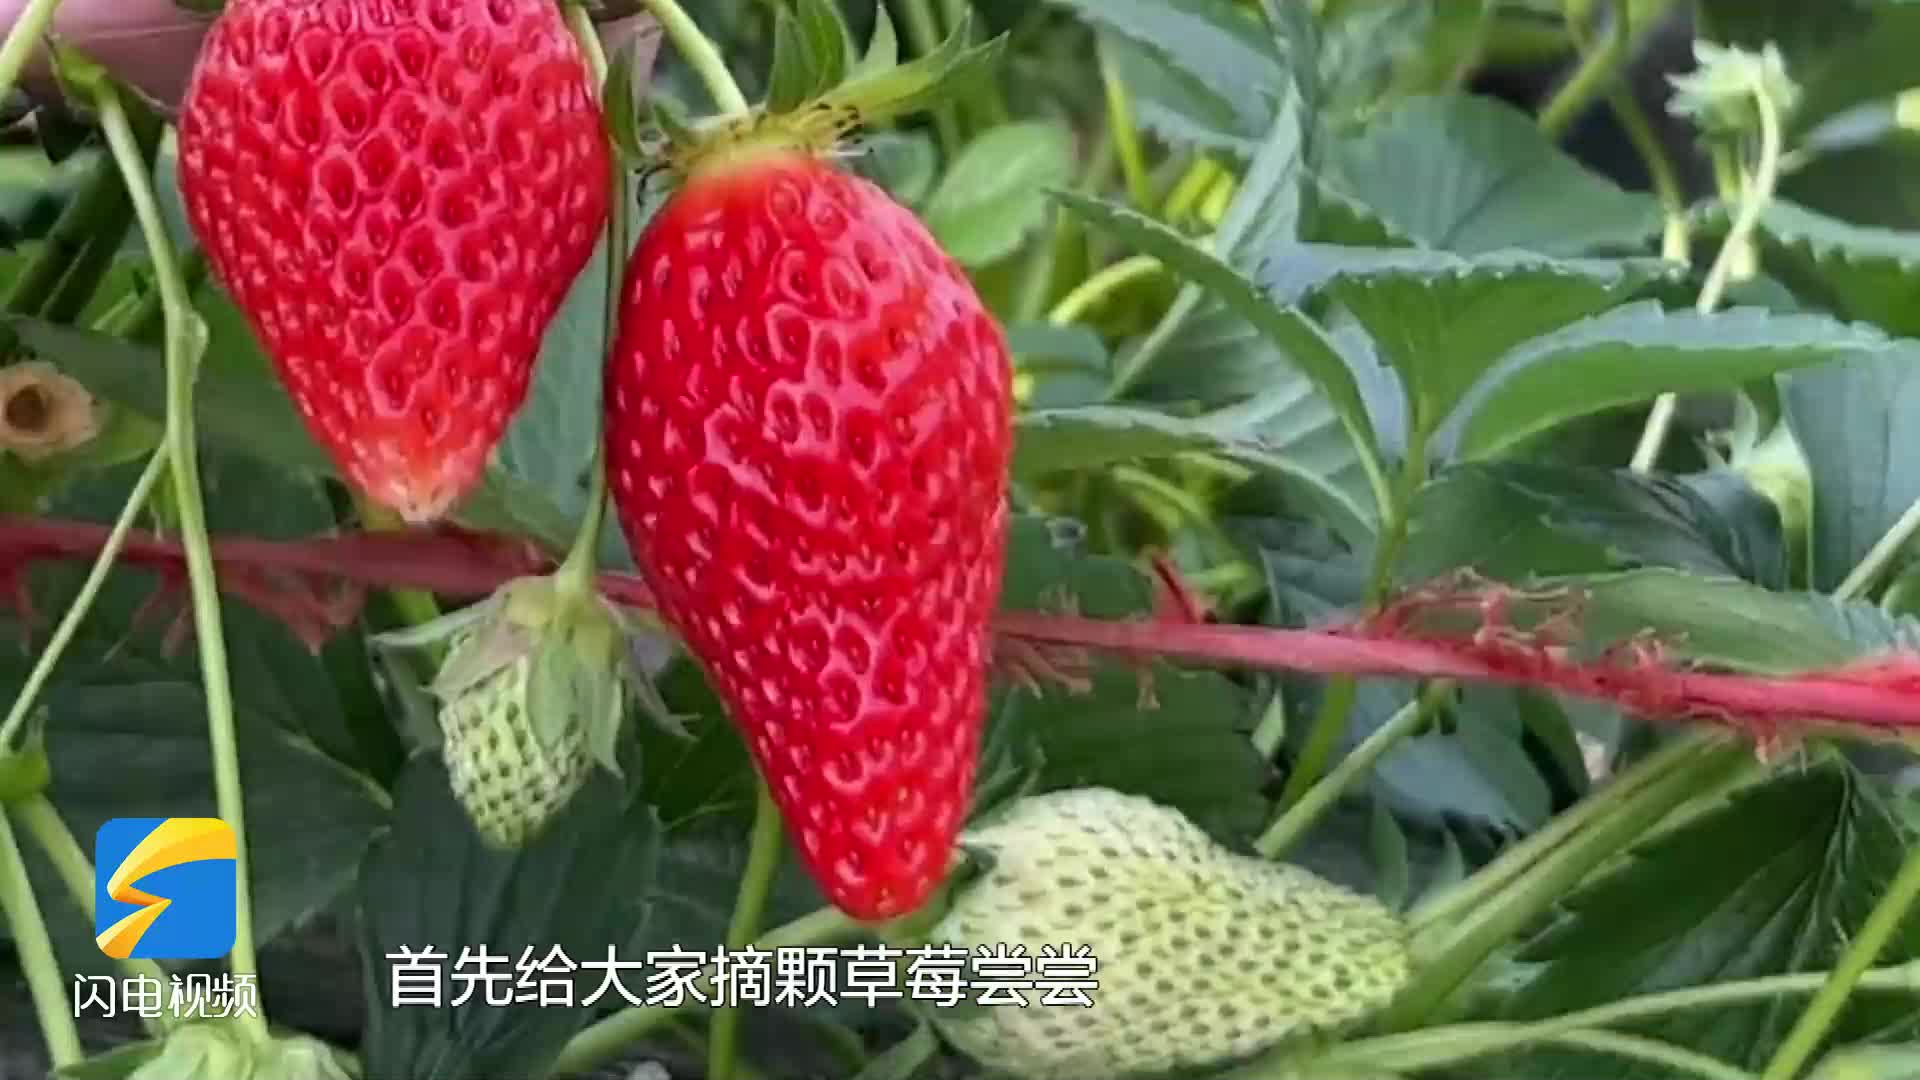 产量大价格高 济南大棚草莓“吃”上中草药 绿色防控病虫害